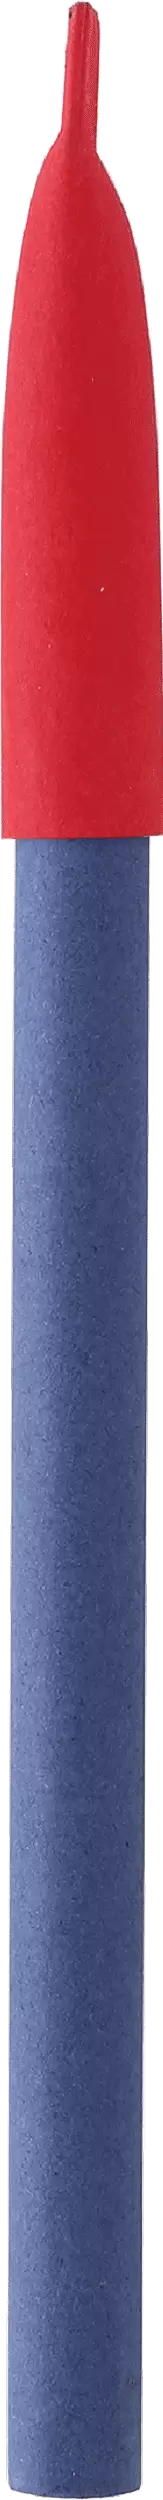 Ручка KRAFT MIX Синяя с красным 3011-01-03